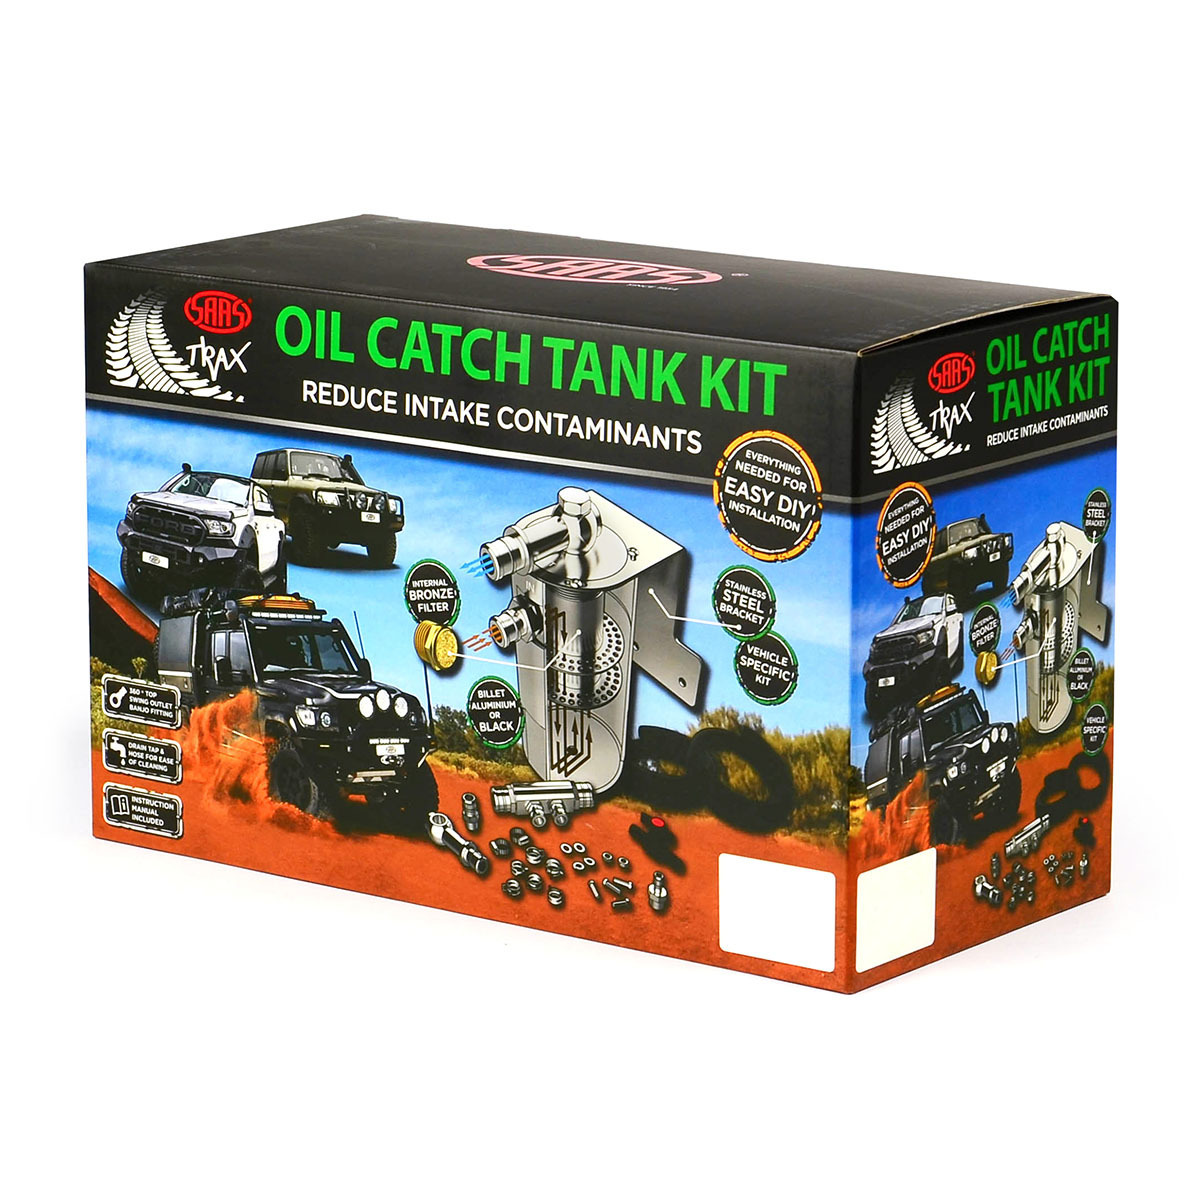 Oil Catch Tank Full Kit suit Landcruiser 79 Series 4.5L